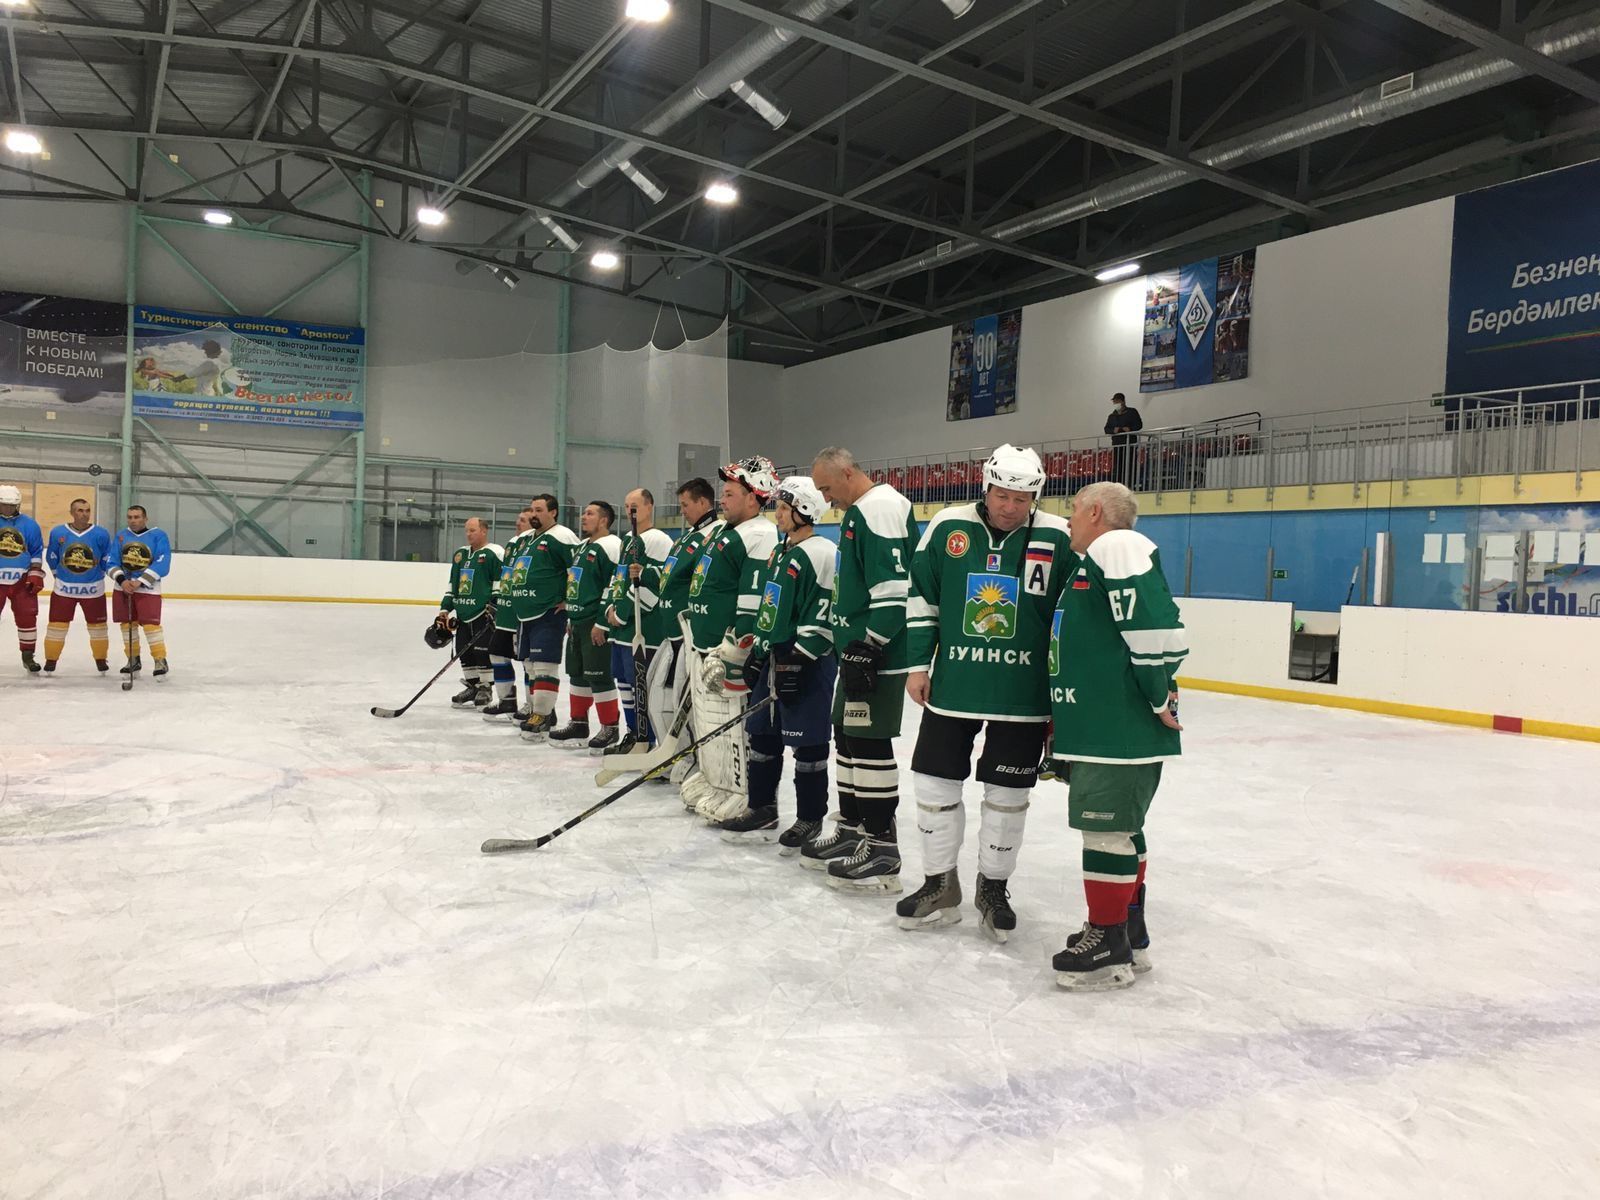 Сегодня в Ледовом дворце "Алтын Алка" прошёл турнир по хоккею среди любительских мужских команд 40+